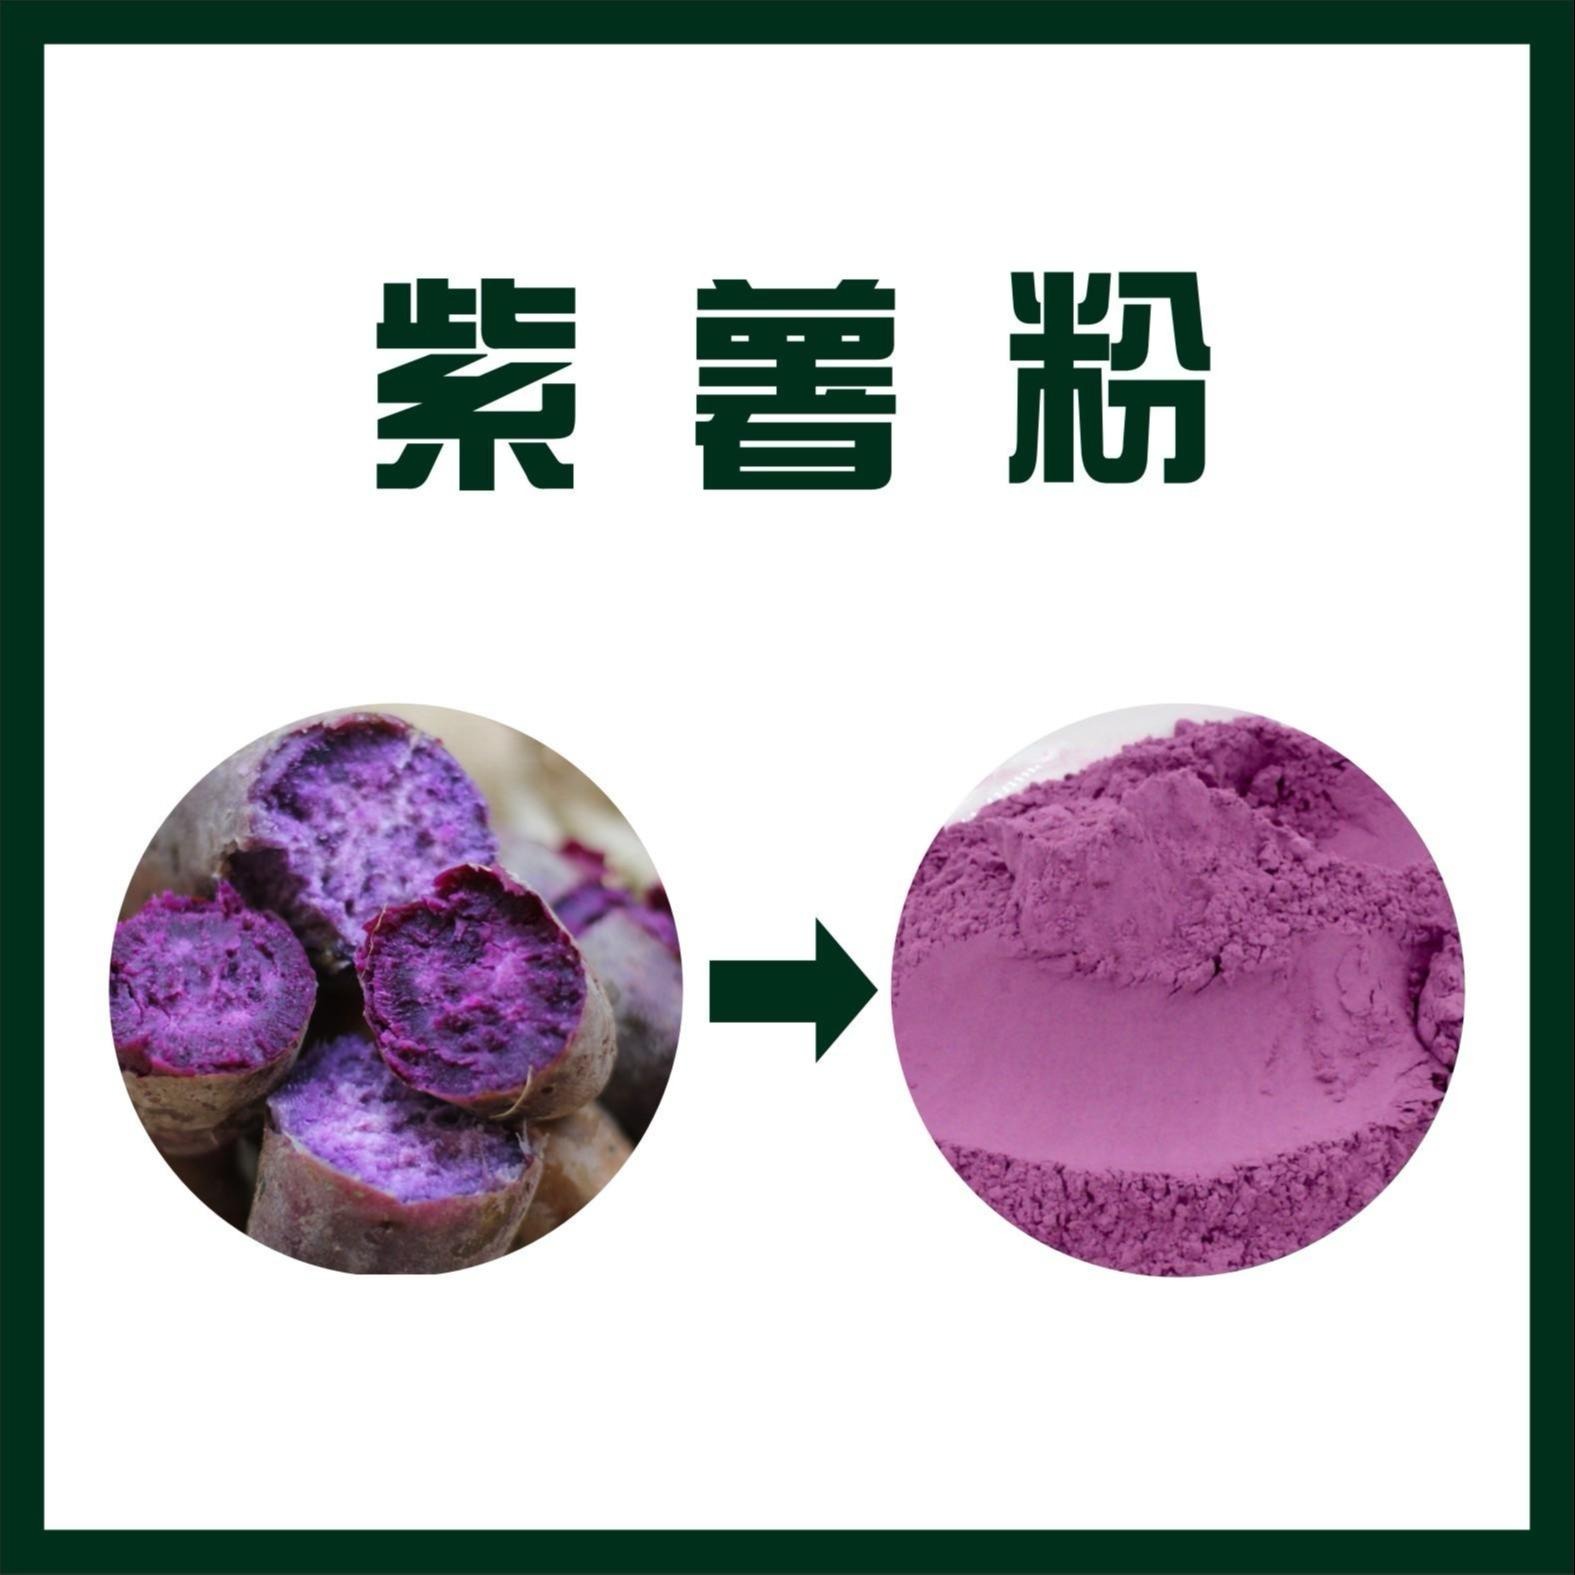 紫薯粉 紫薯浓缩粉   紫薯喷雾干燥粉 生产厂家图片